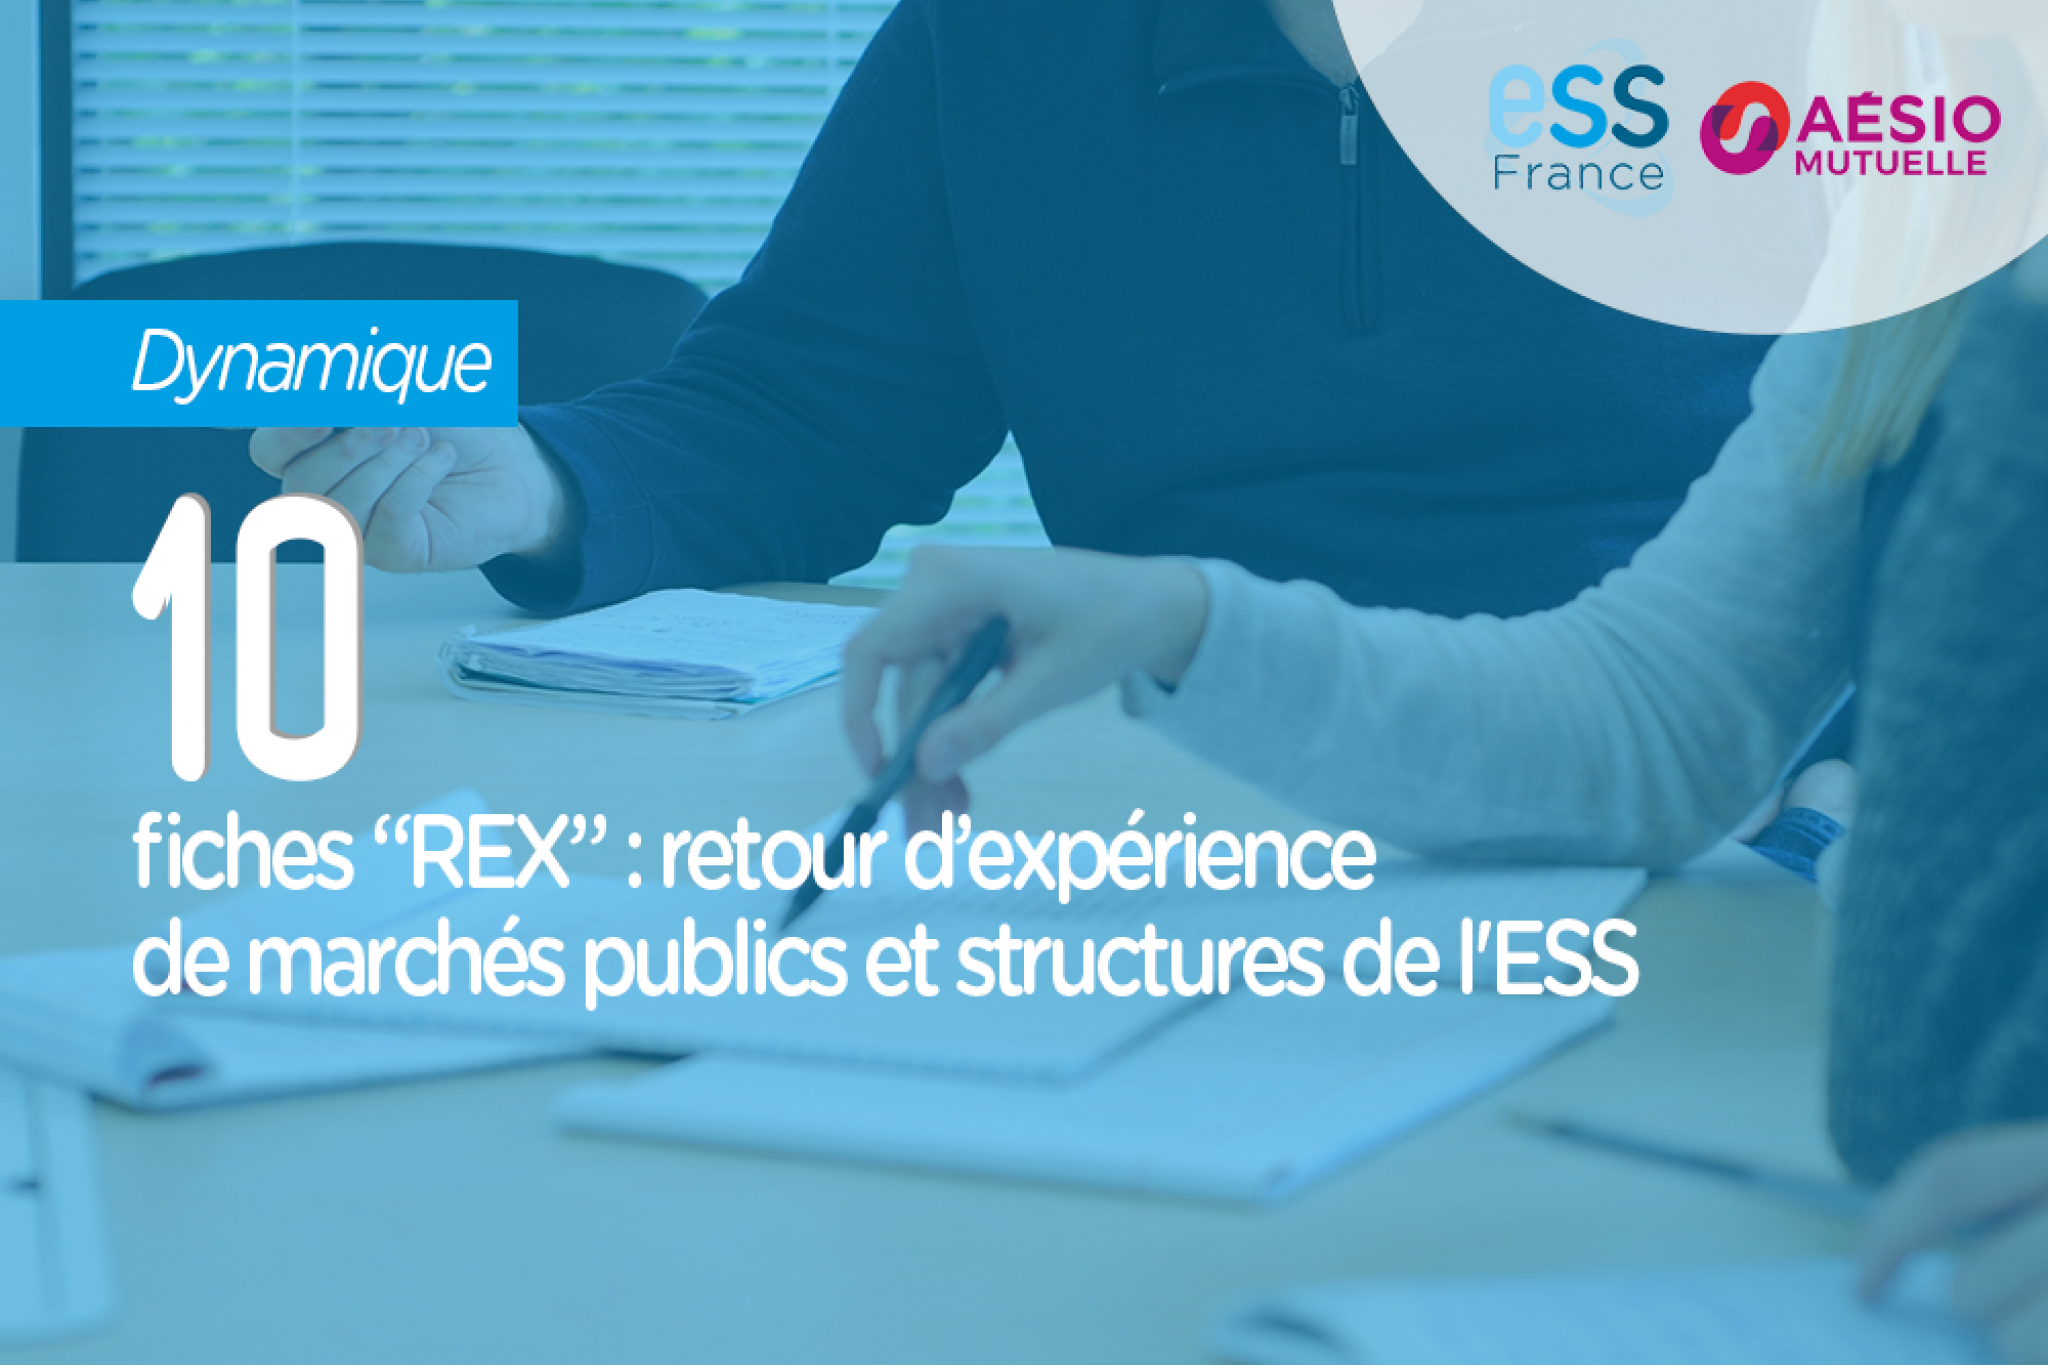 10 fiches "REX": retour d'expérience de marchés publics et structures de l'ESS